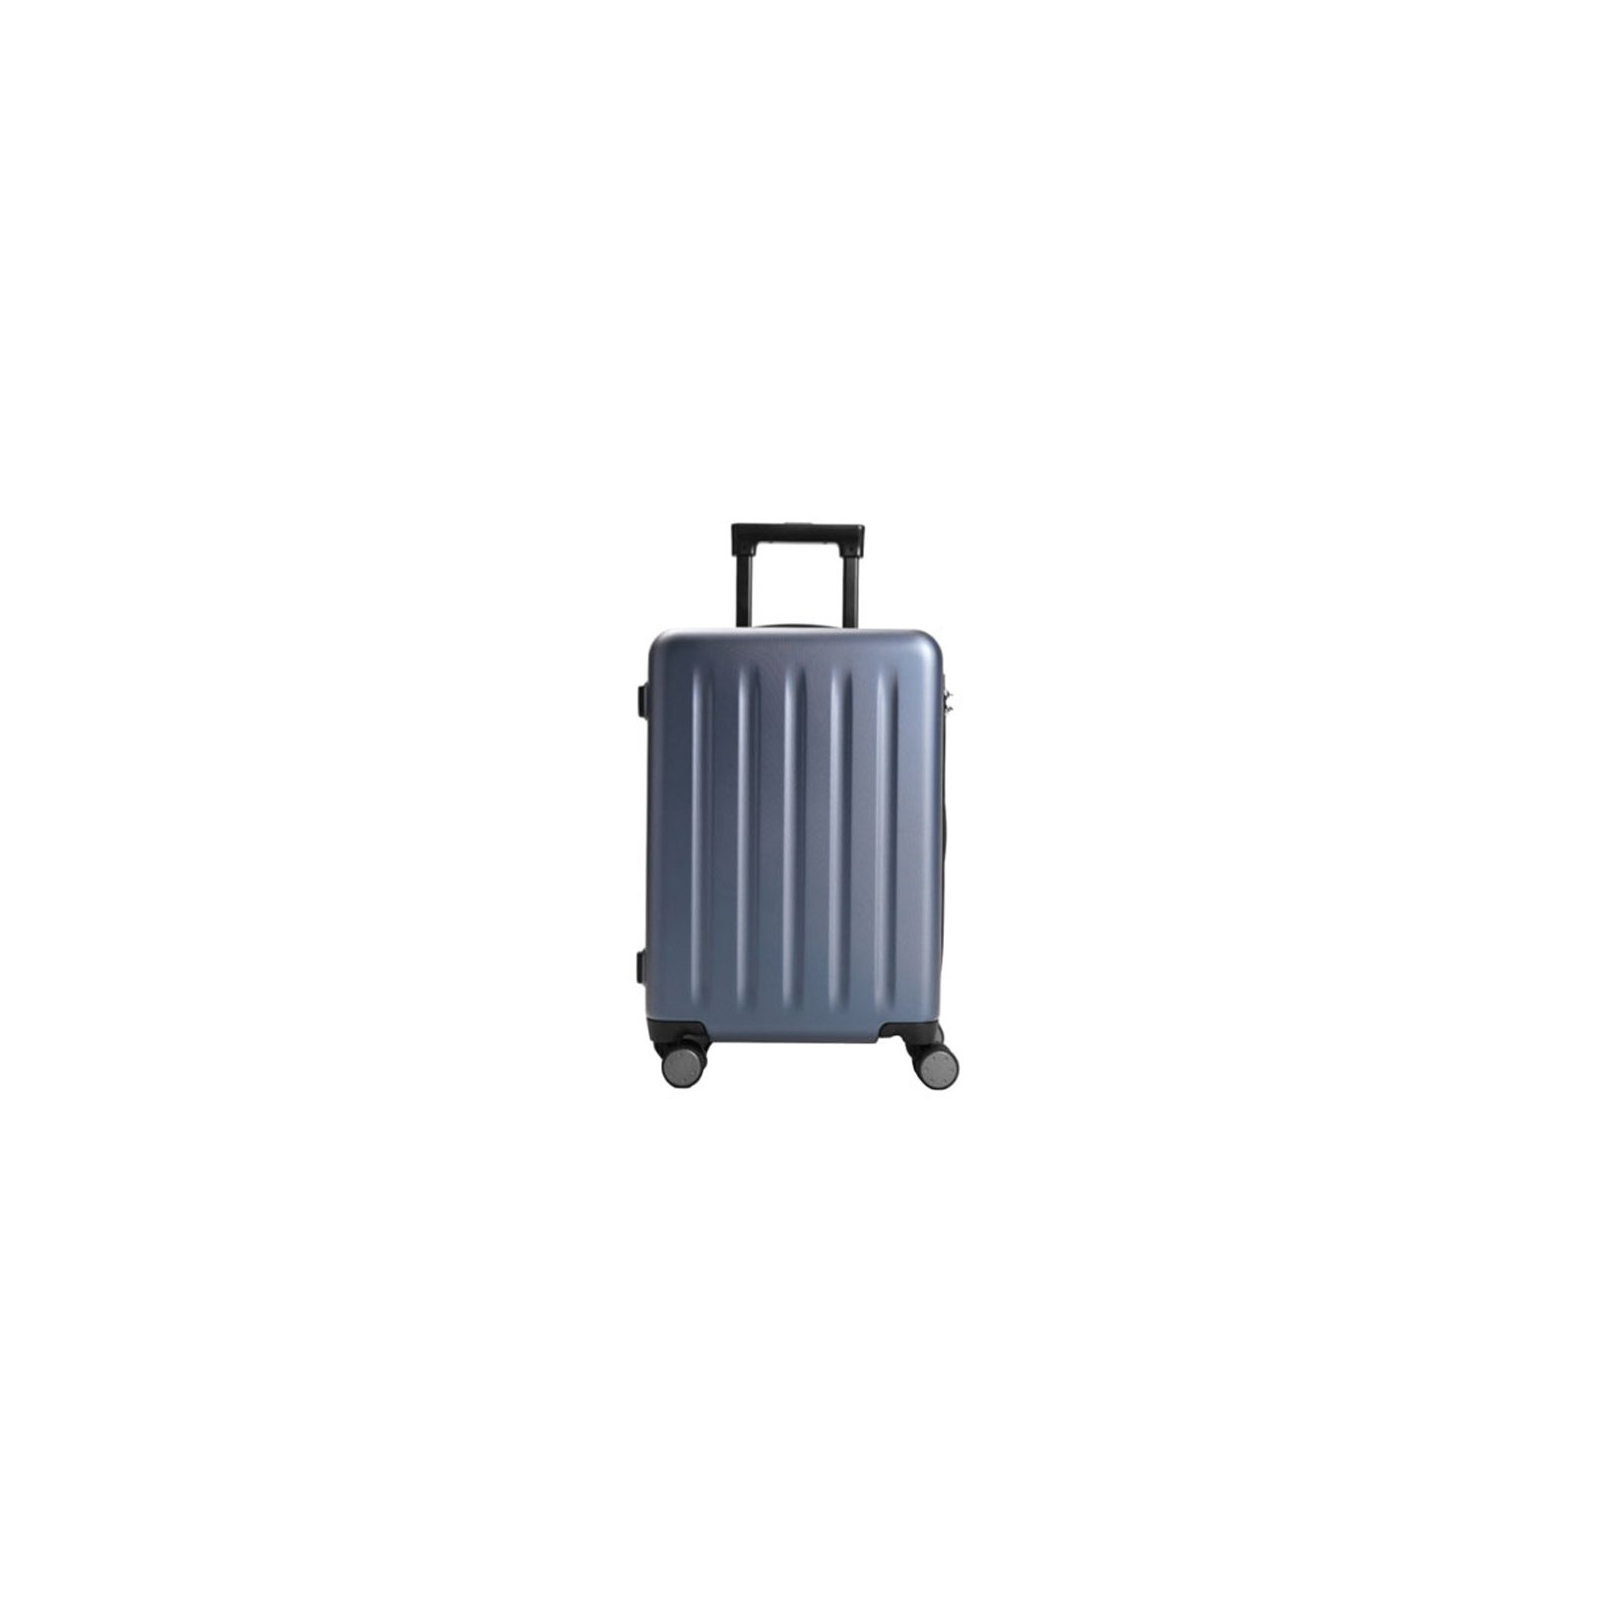 Чемодан Xiaomi Ninetygo PC Luggage 24'' Black (6970055340113)